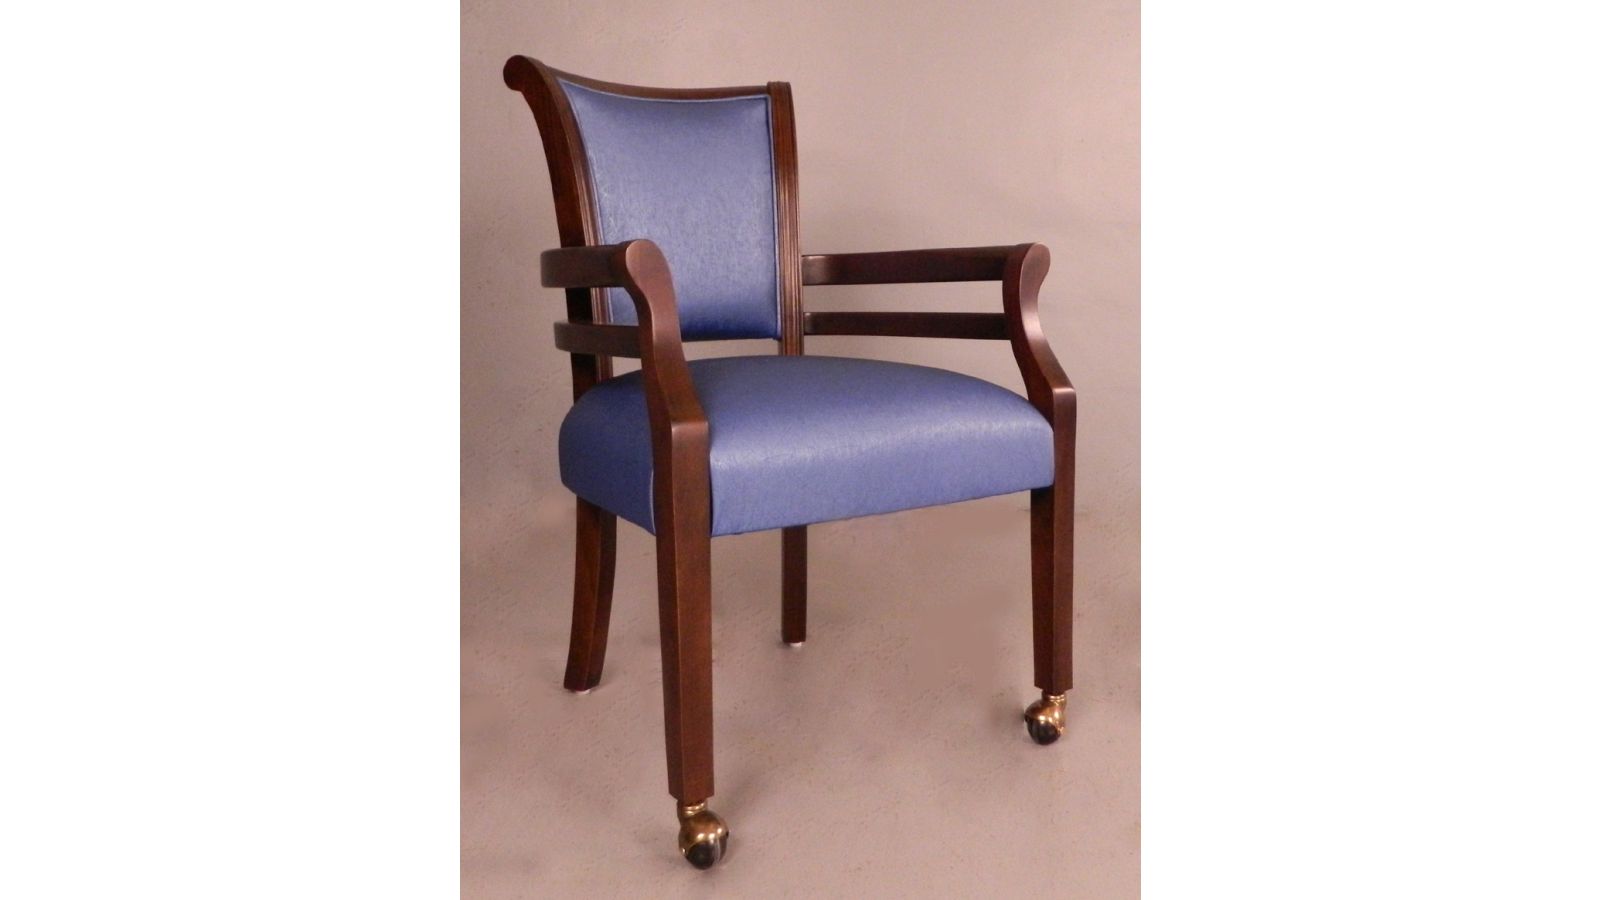 Custom Senior Living dining chair